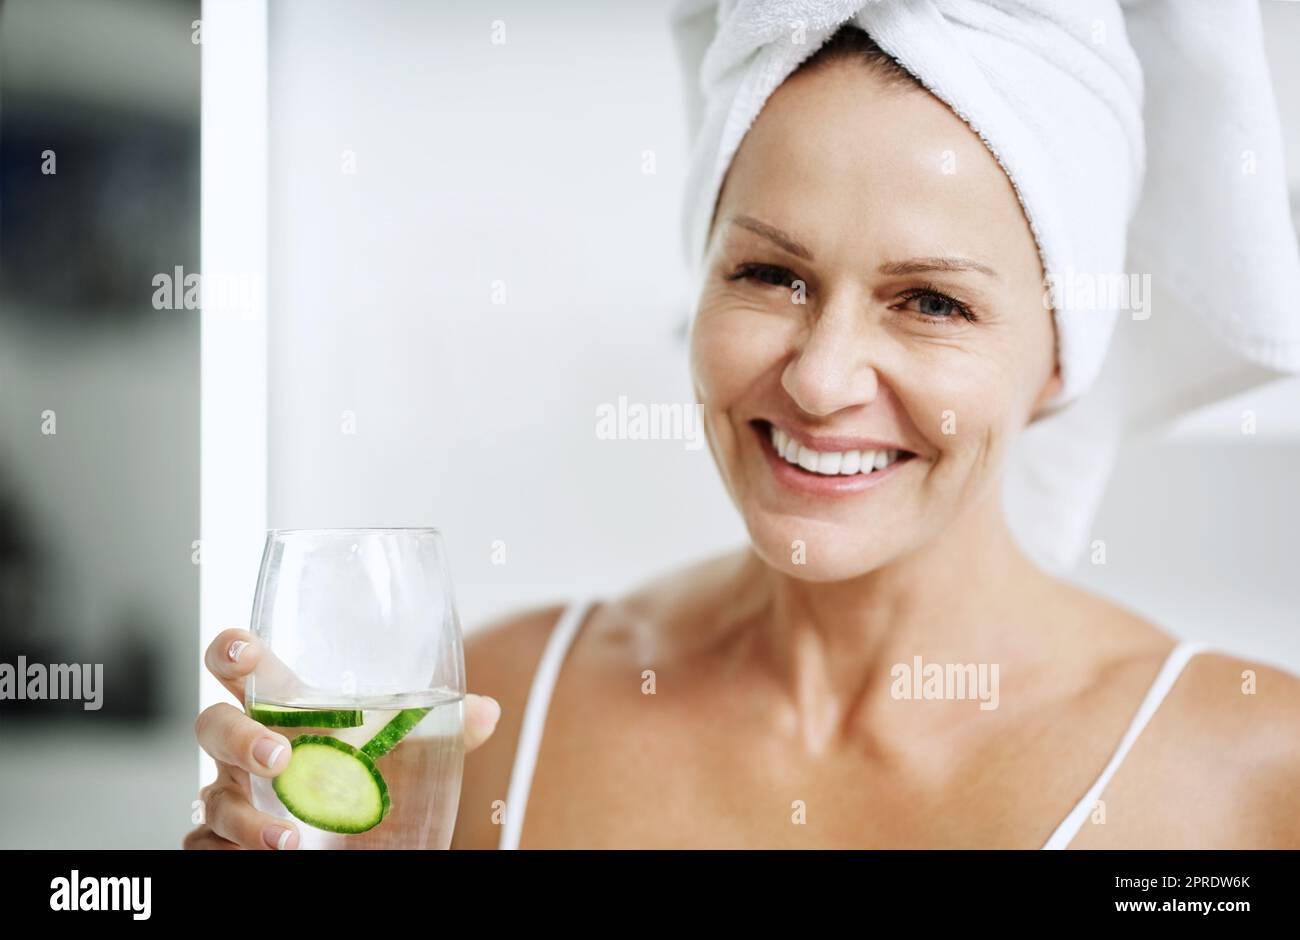 Probieren Sie es einfach aus, es funktioniert. Eine reife Frau hält ein Glas Wasser mit Gurke in sich. Stockfoto